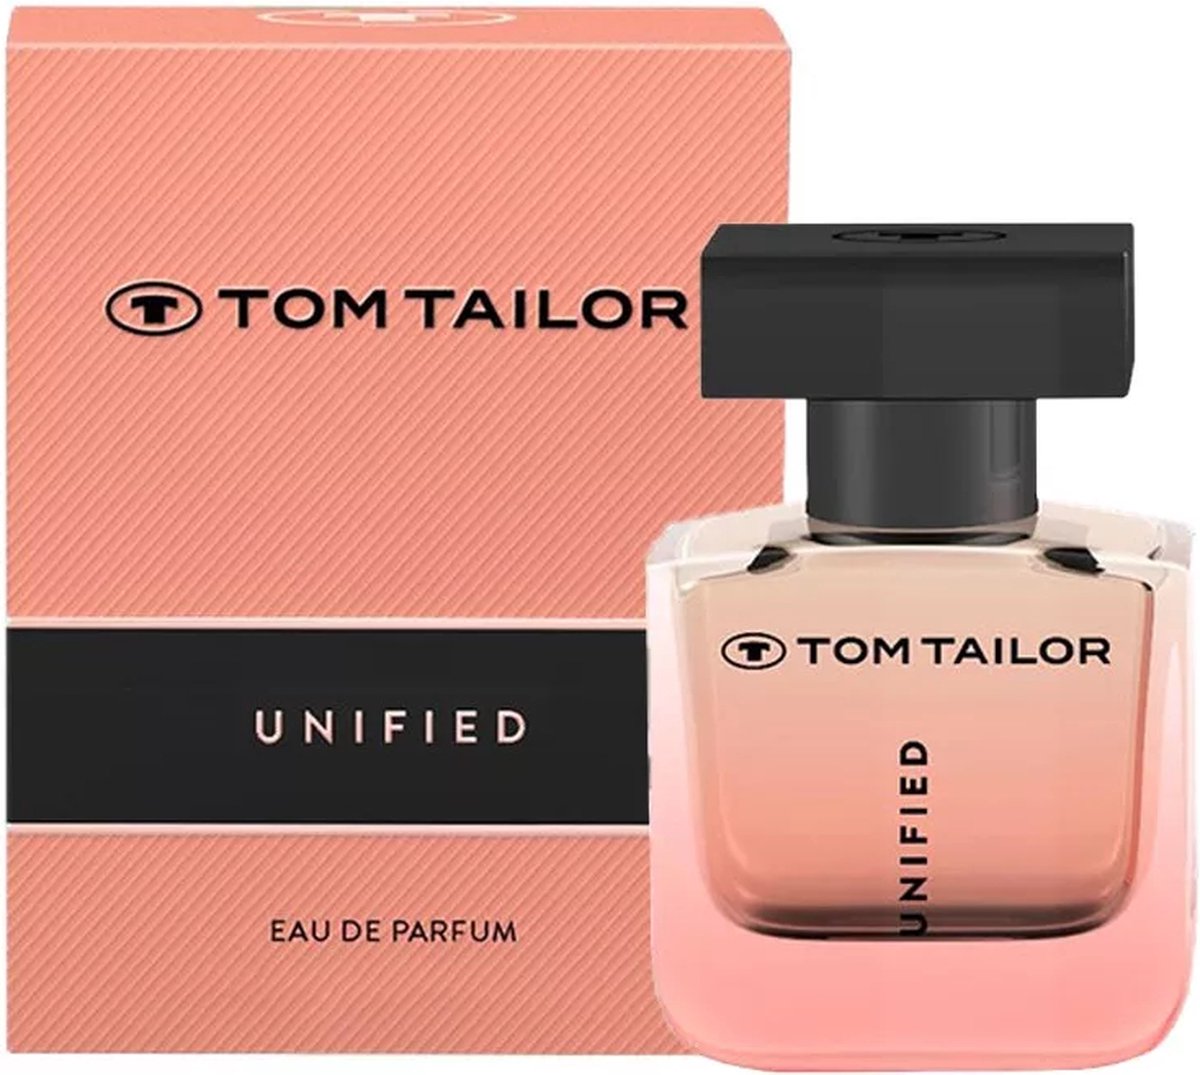 Tom Tailor Unified | 50ml Parfum de bol Eau